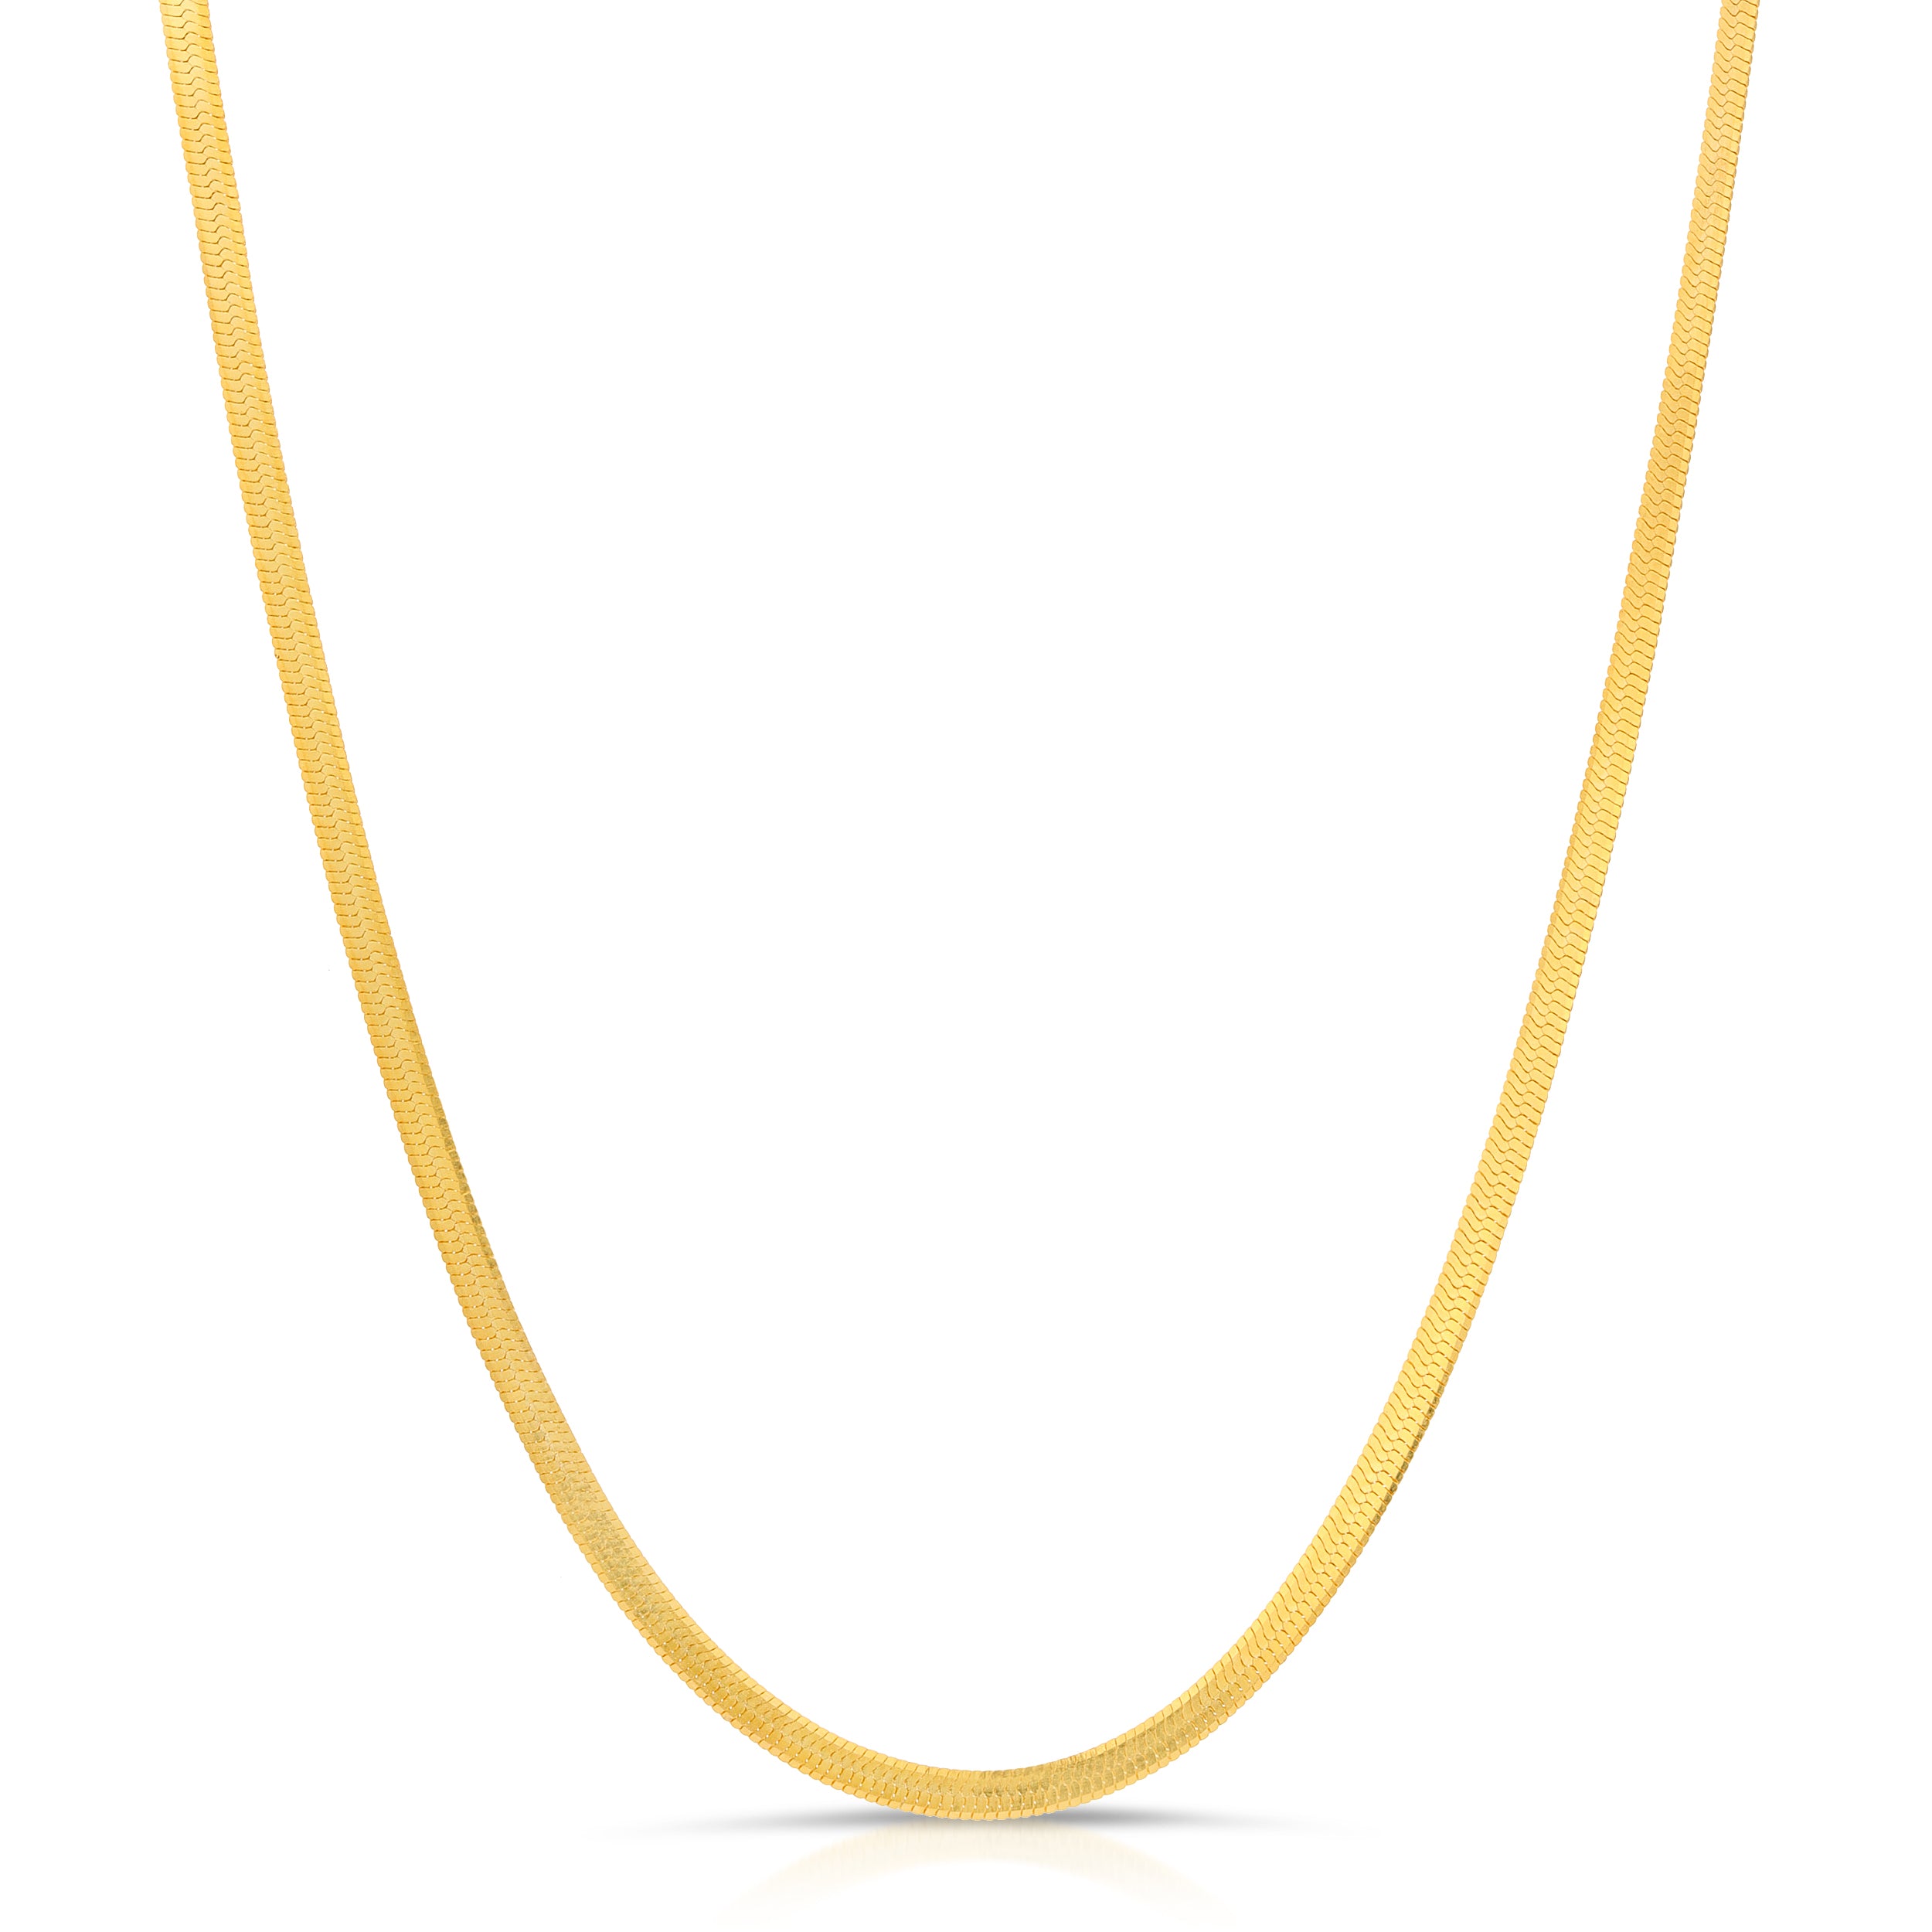 Simplistic Herringbone Chain